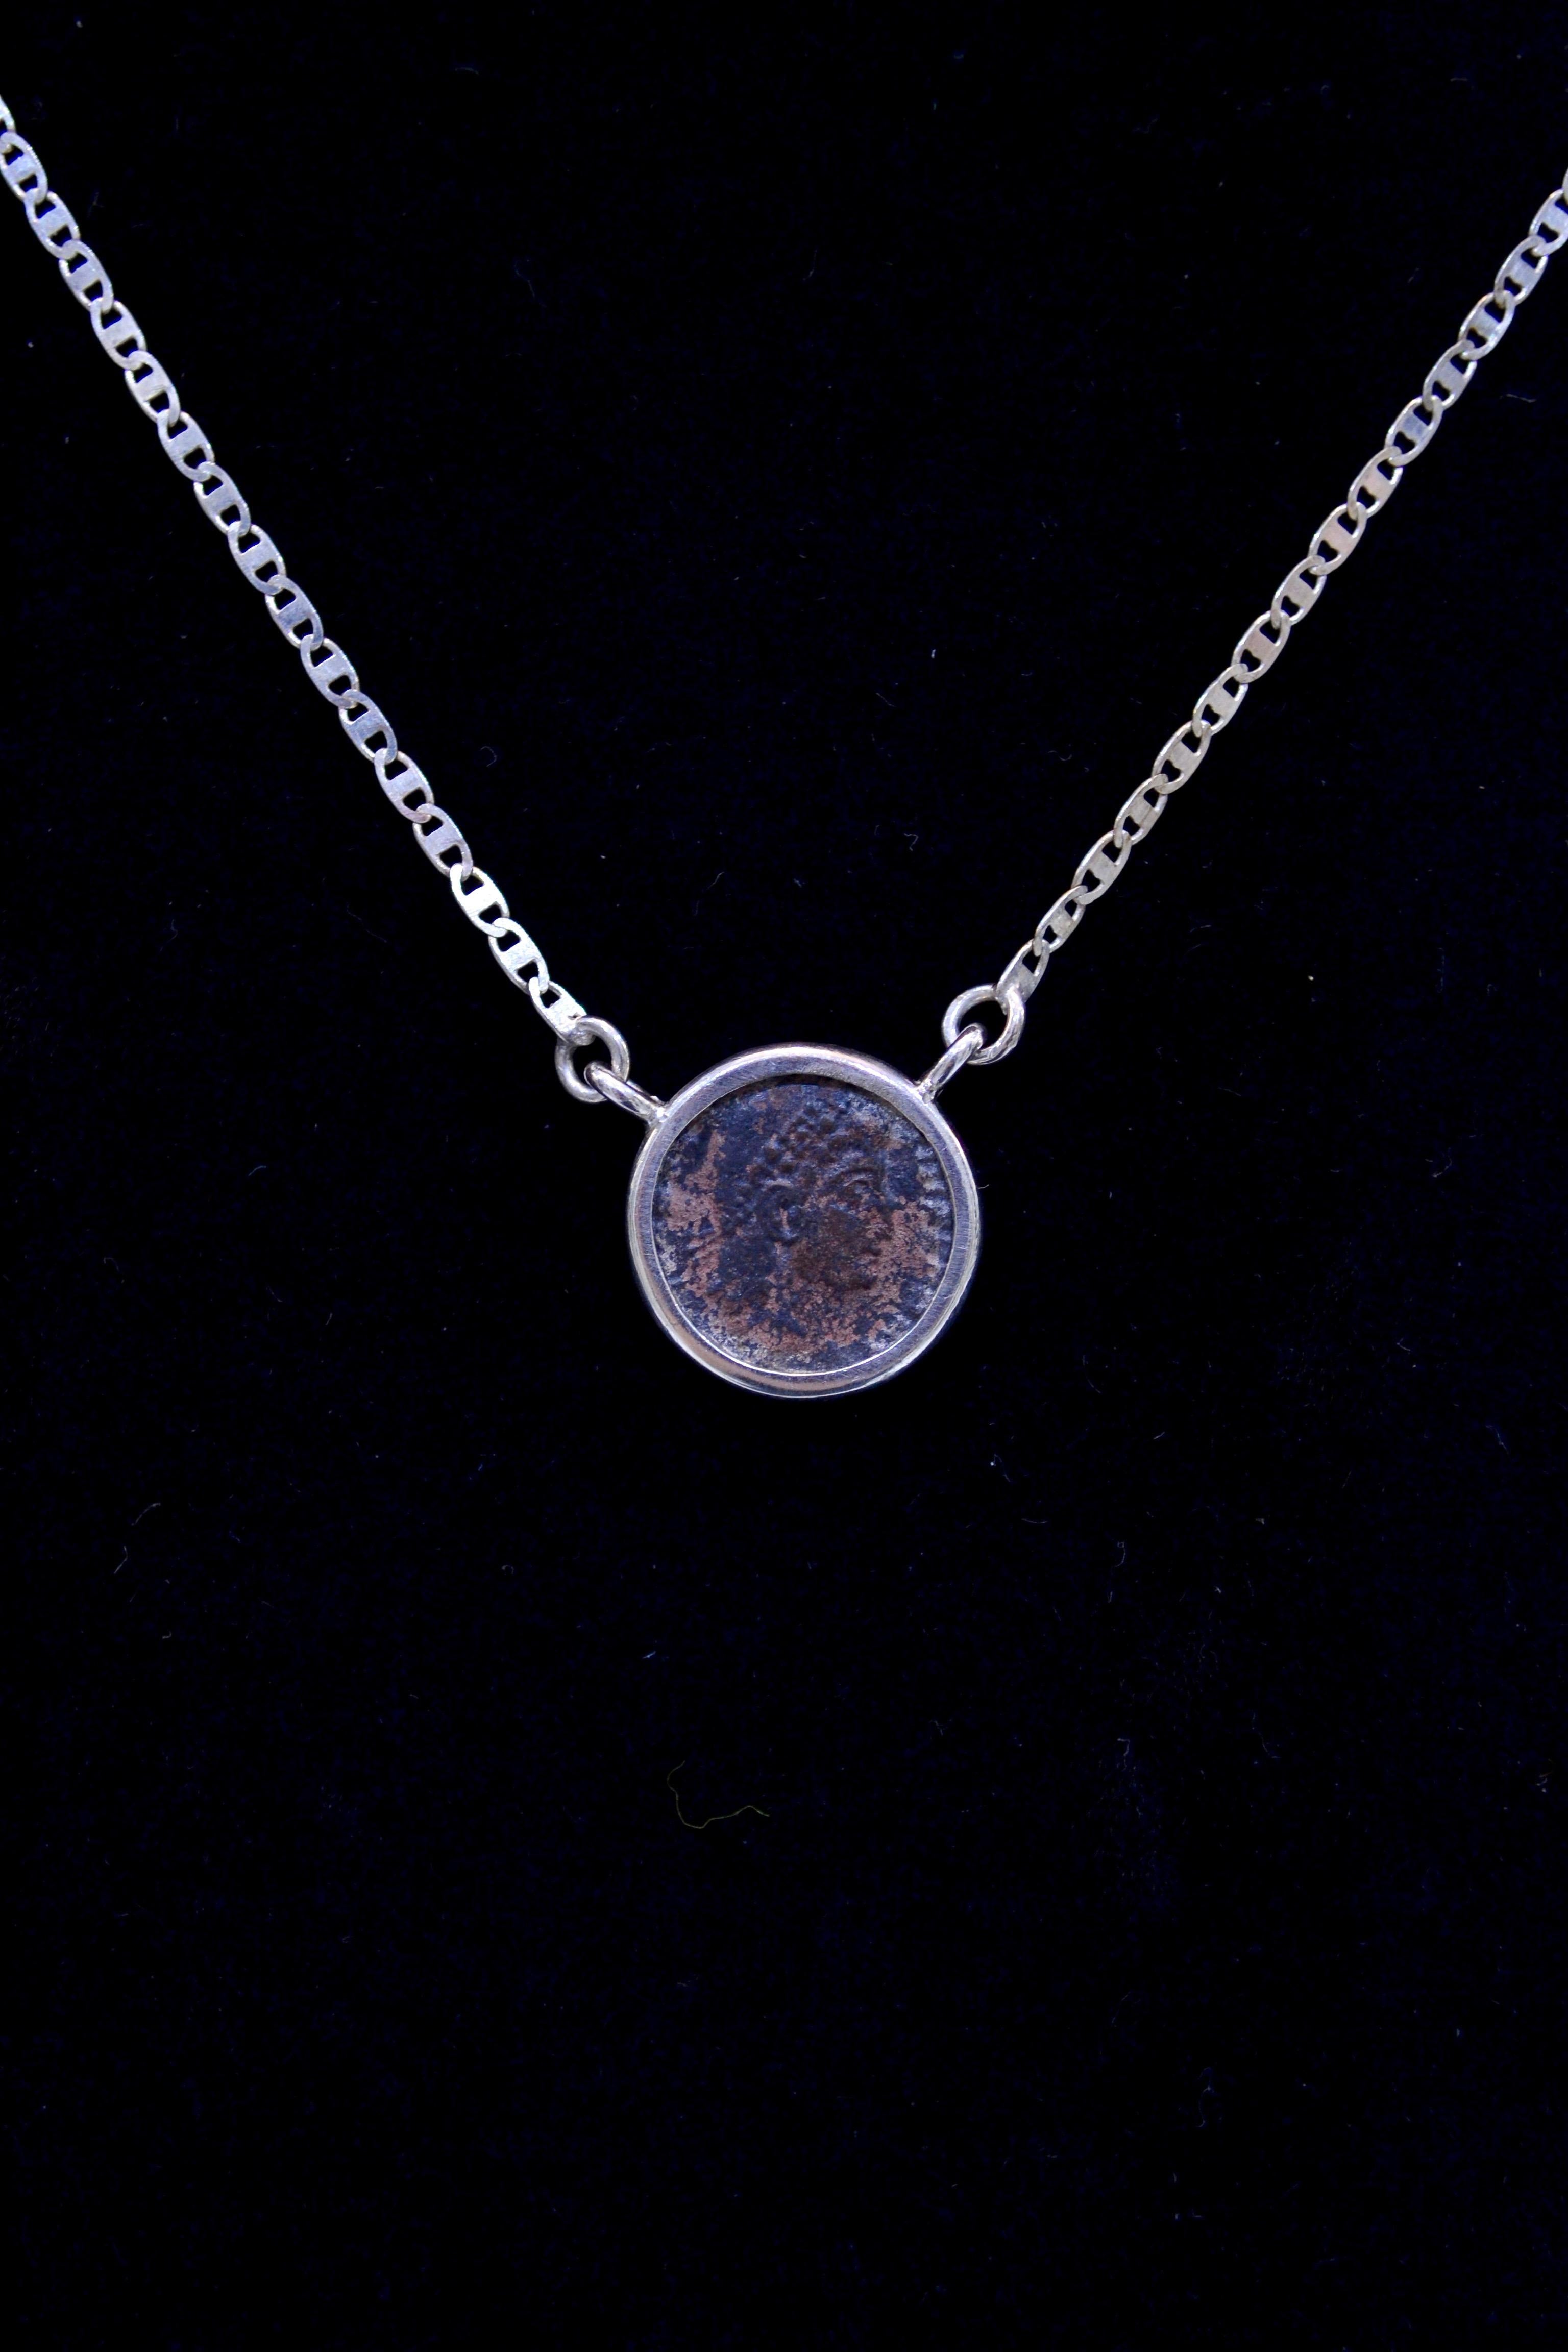 Authentische römische Bronzemünze ca. 27 v. Chr. - 476 n. Chr. montiert auf zeitgenössischer Silberkette. Bereit, getragen zu werden!

Bronzemünze aus dem großen Römischen Reich, die fast 2.000 Jahre alt ist.  